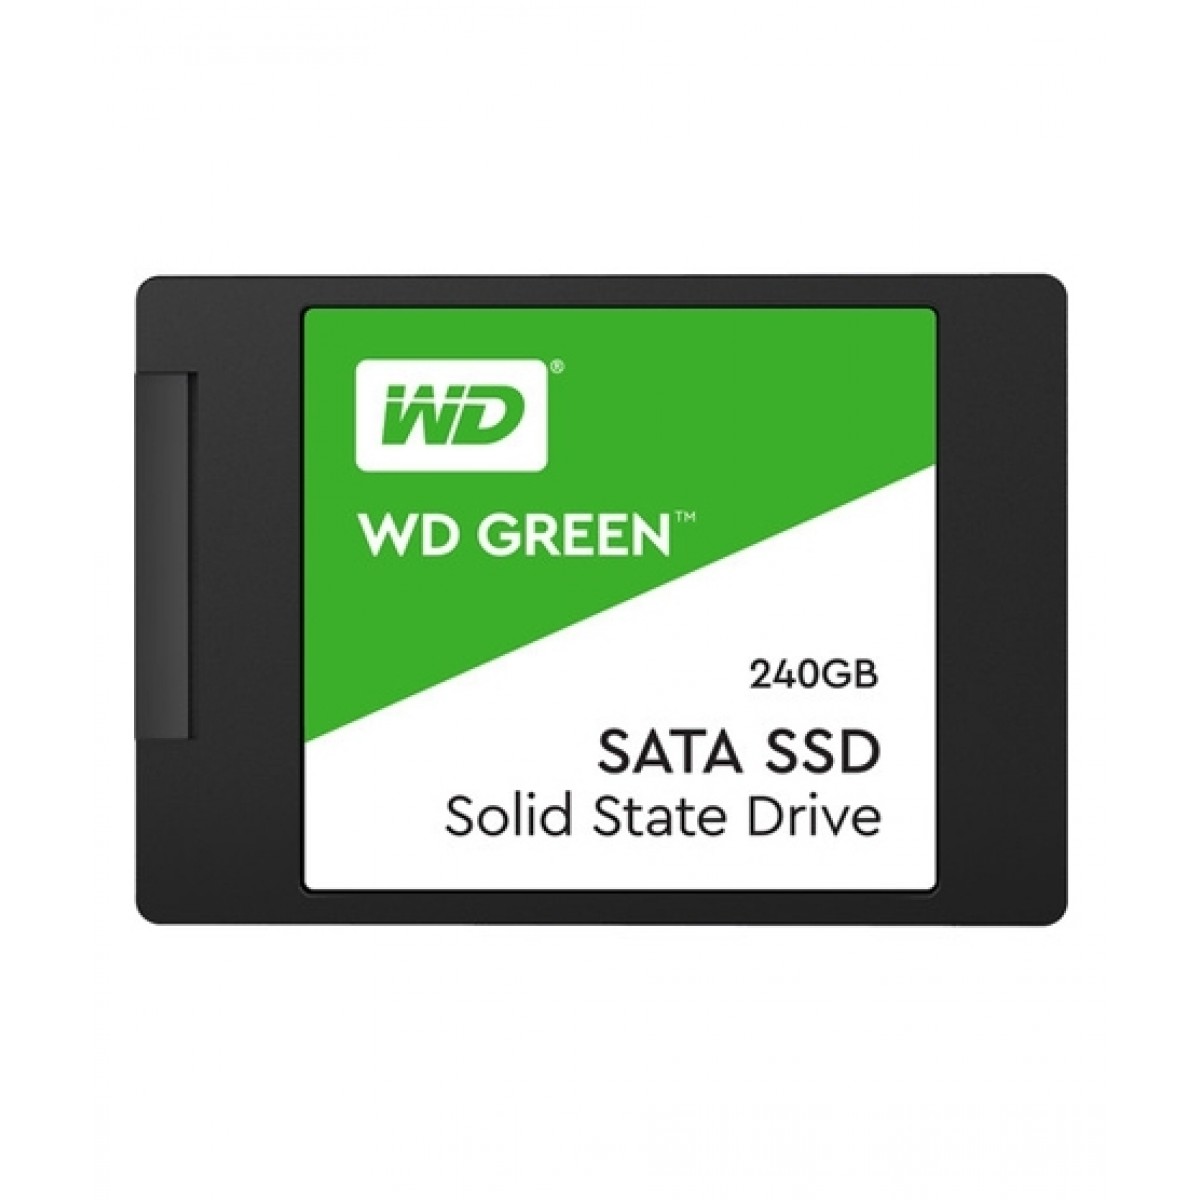 WD Green 240GB SATA III Internal SSD